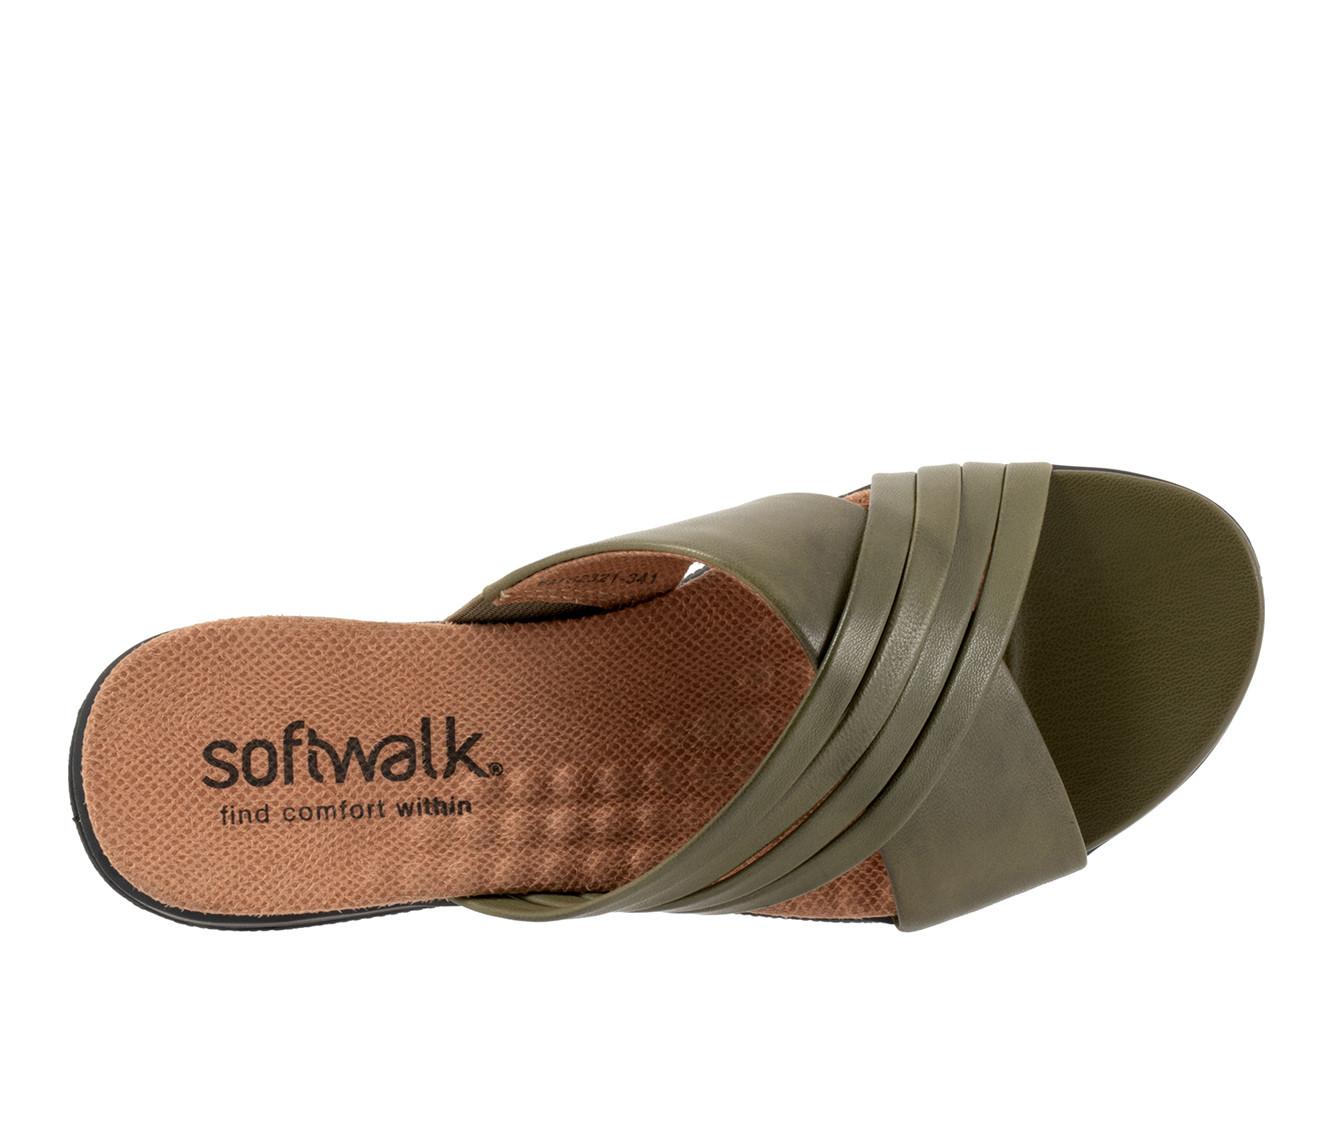 Women's Softwalk Tillman 5.0 Sandals